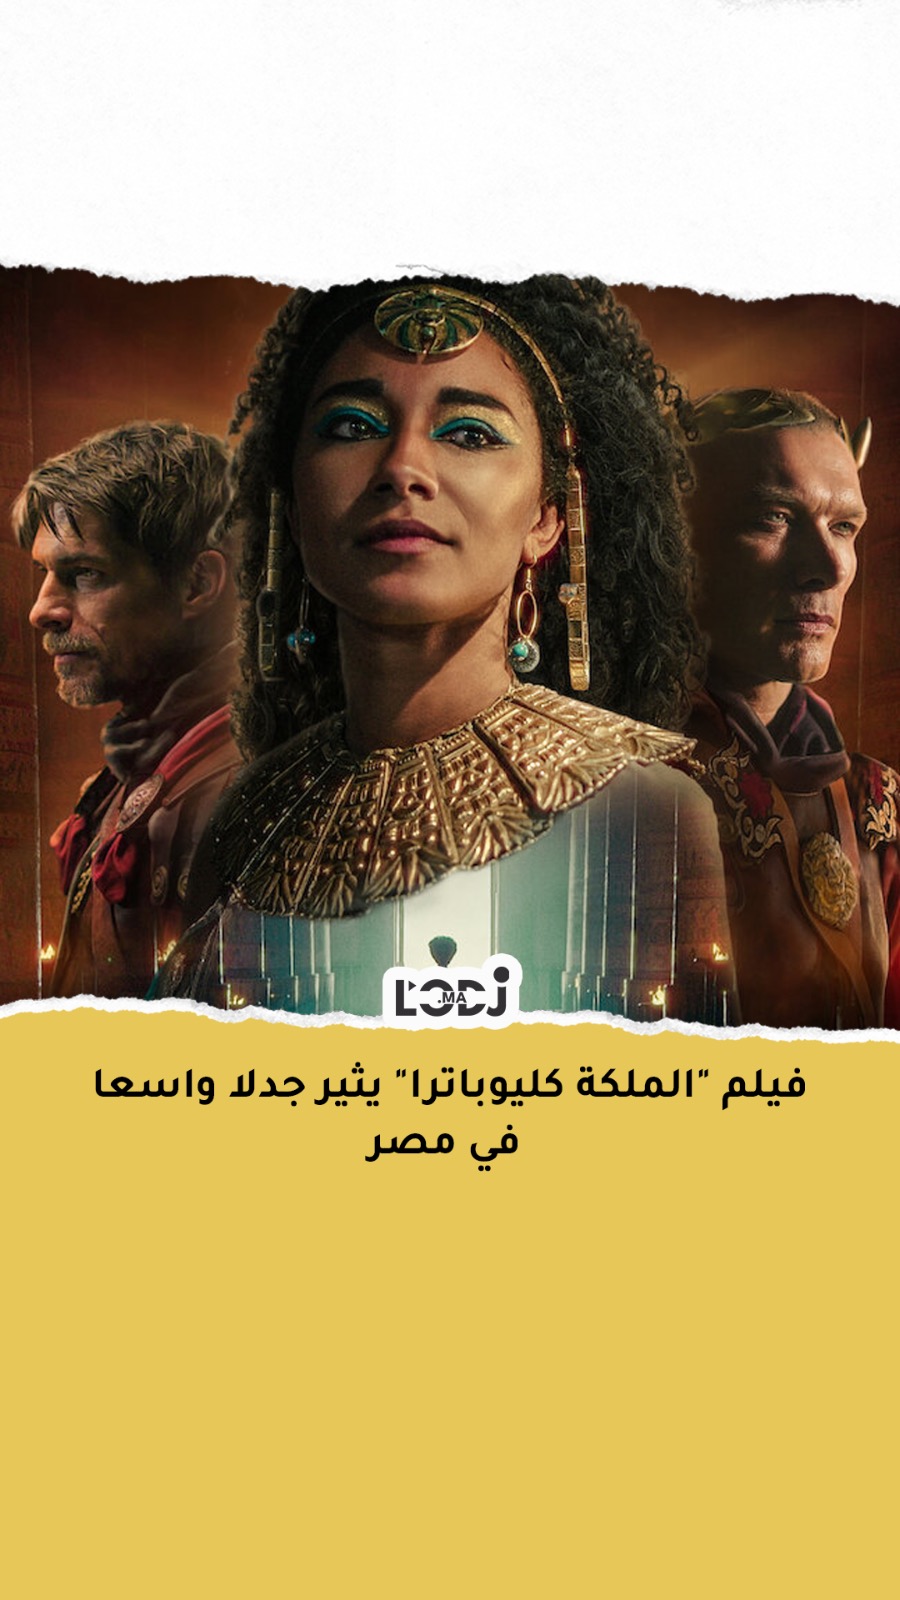 سمراء وذات ملامح أفريقية.. فيلم "الملكة كليوباترا" يثير جدلا واسعا في مصر